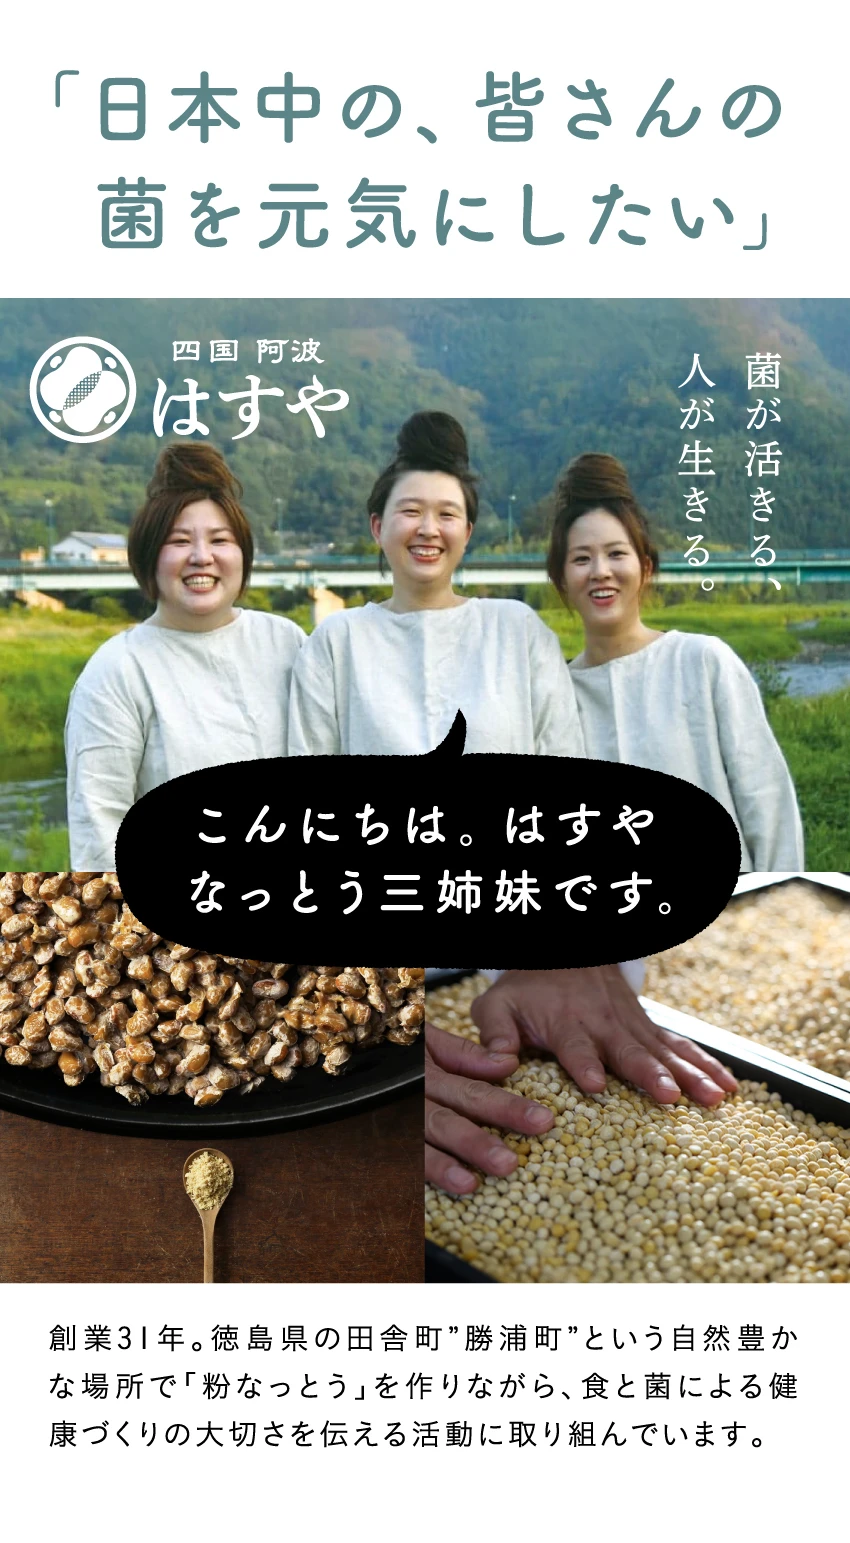 「日本中の、皆さんの菌を元気にしたい」創業31年。徳島県の田舎町”勝浦町”という自然豊かな場所で「粉なっとう」を作りながら、食と菌による健康づくりの大切さを伝える活動に取り組んでいます。